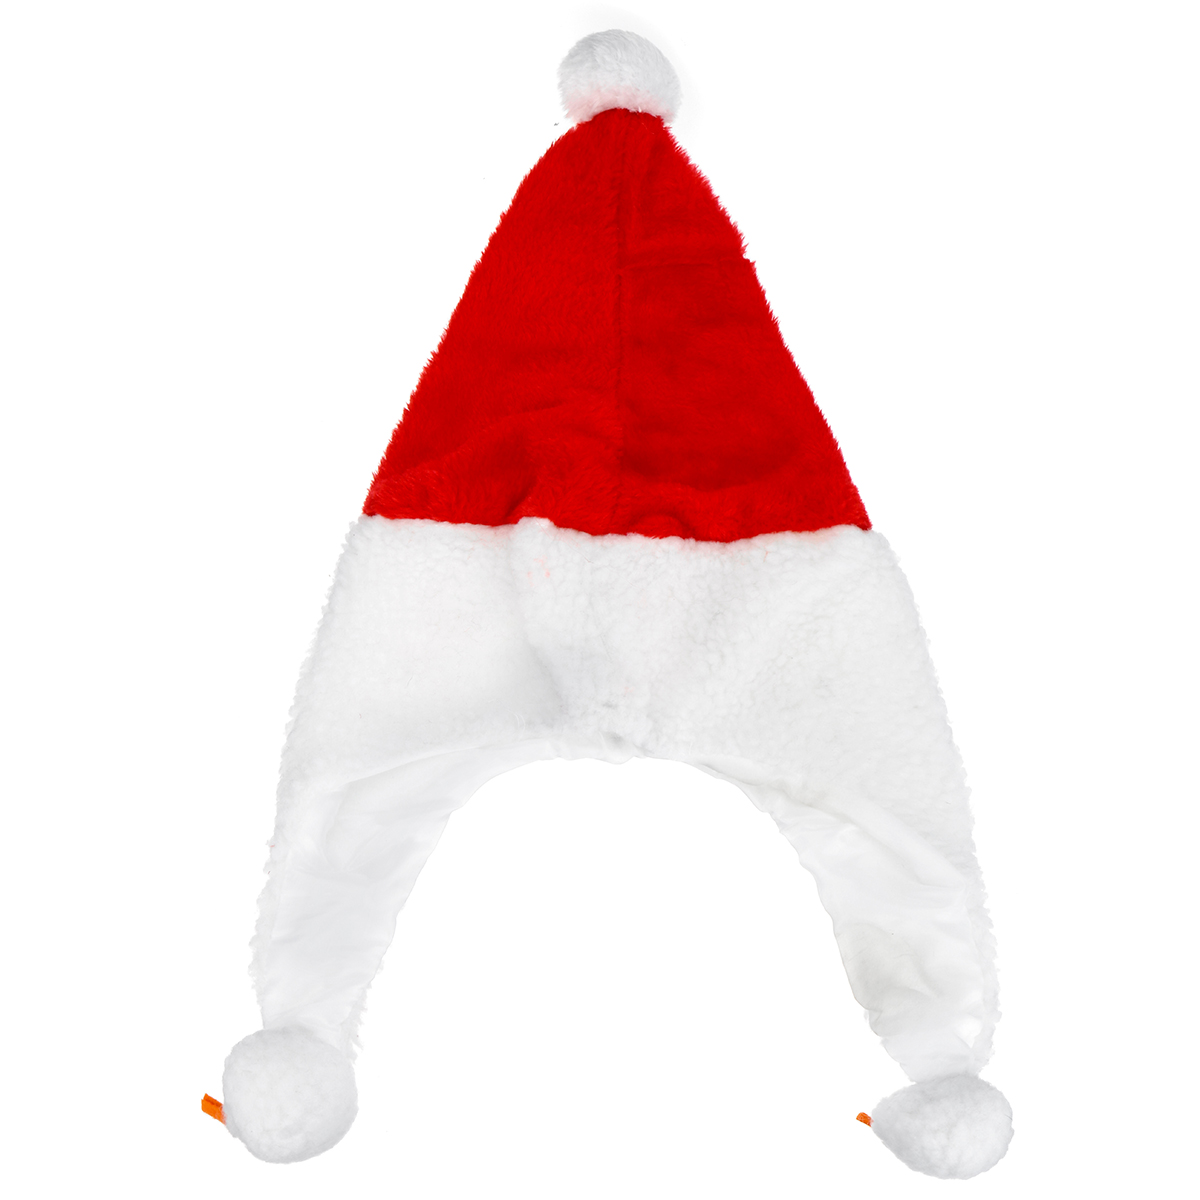 Unisex-Christmas-Xmas-Novelty-Plush-Hat-Santa-Claus-Hat-Holiday-Decoration-1747495-6